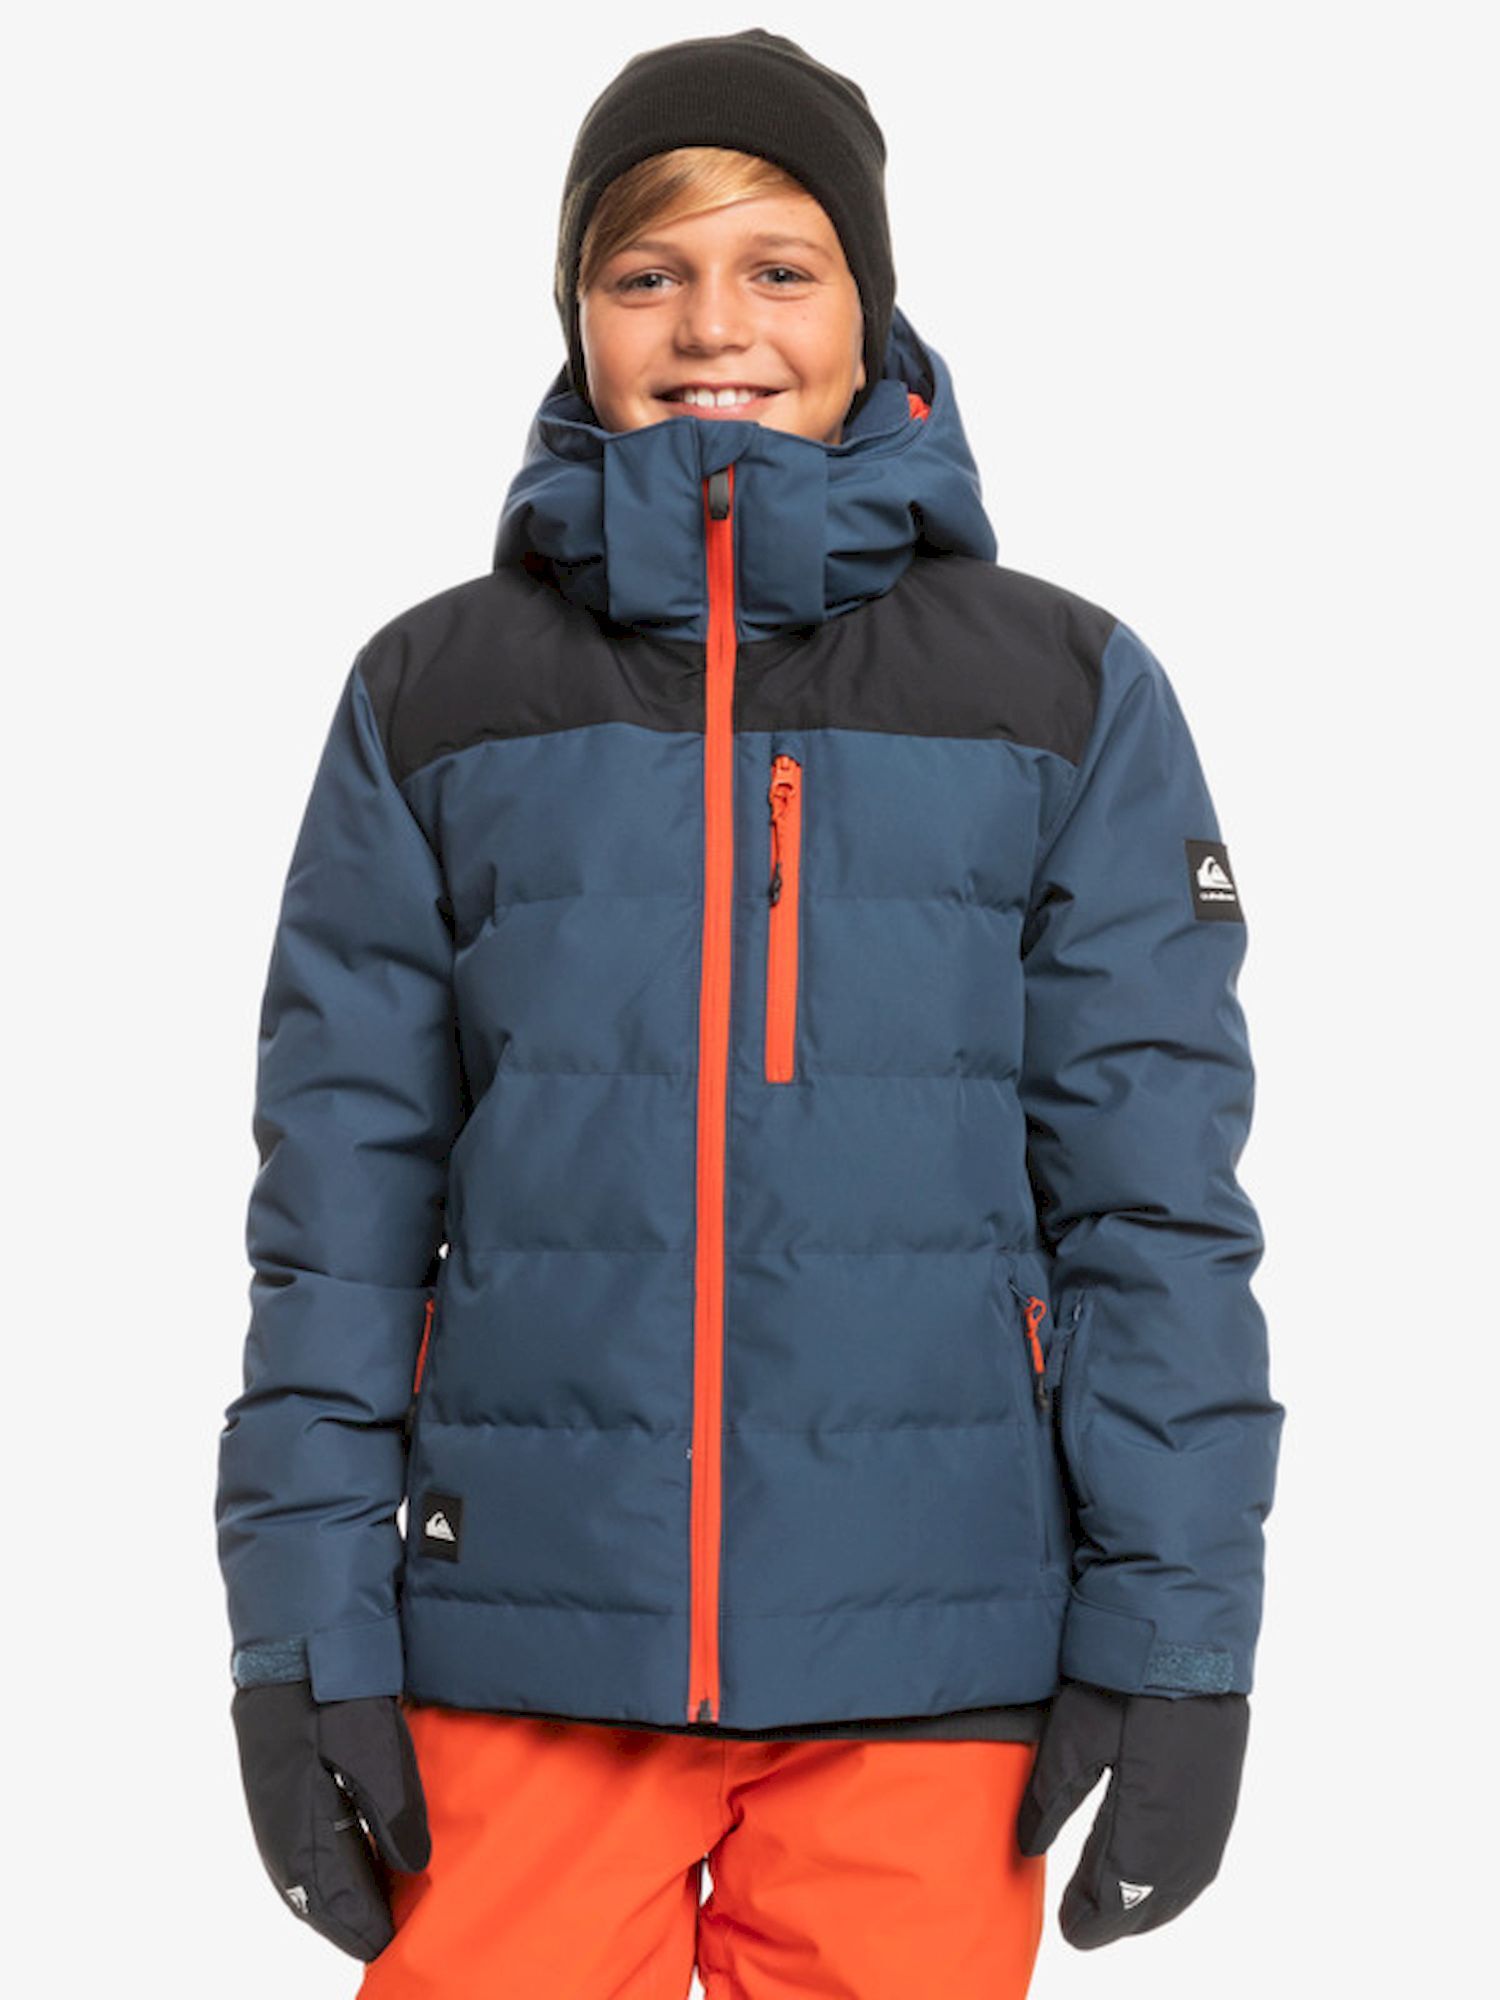 Quiksilver The Edge Youth Jacket - Chaqueta de esquí - Niños | Hardloop